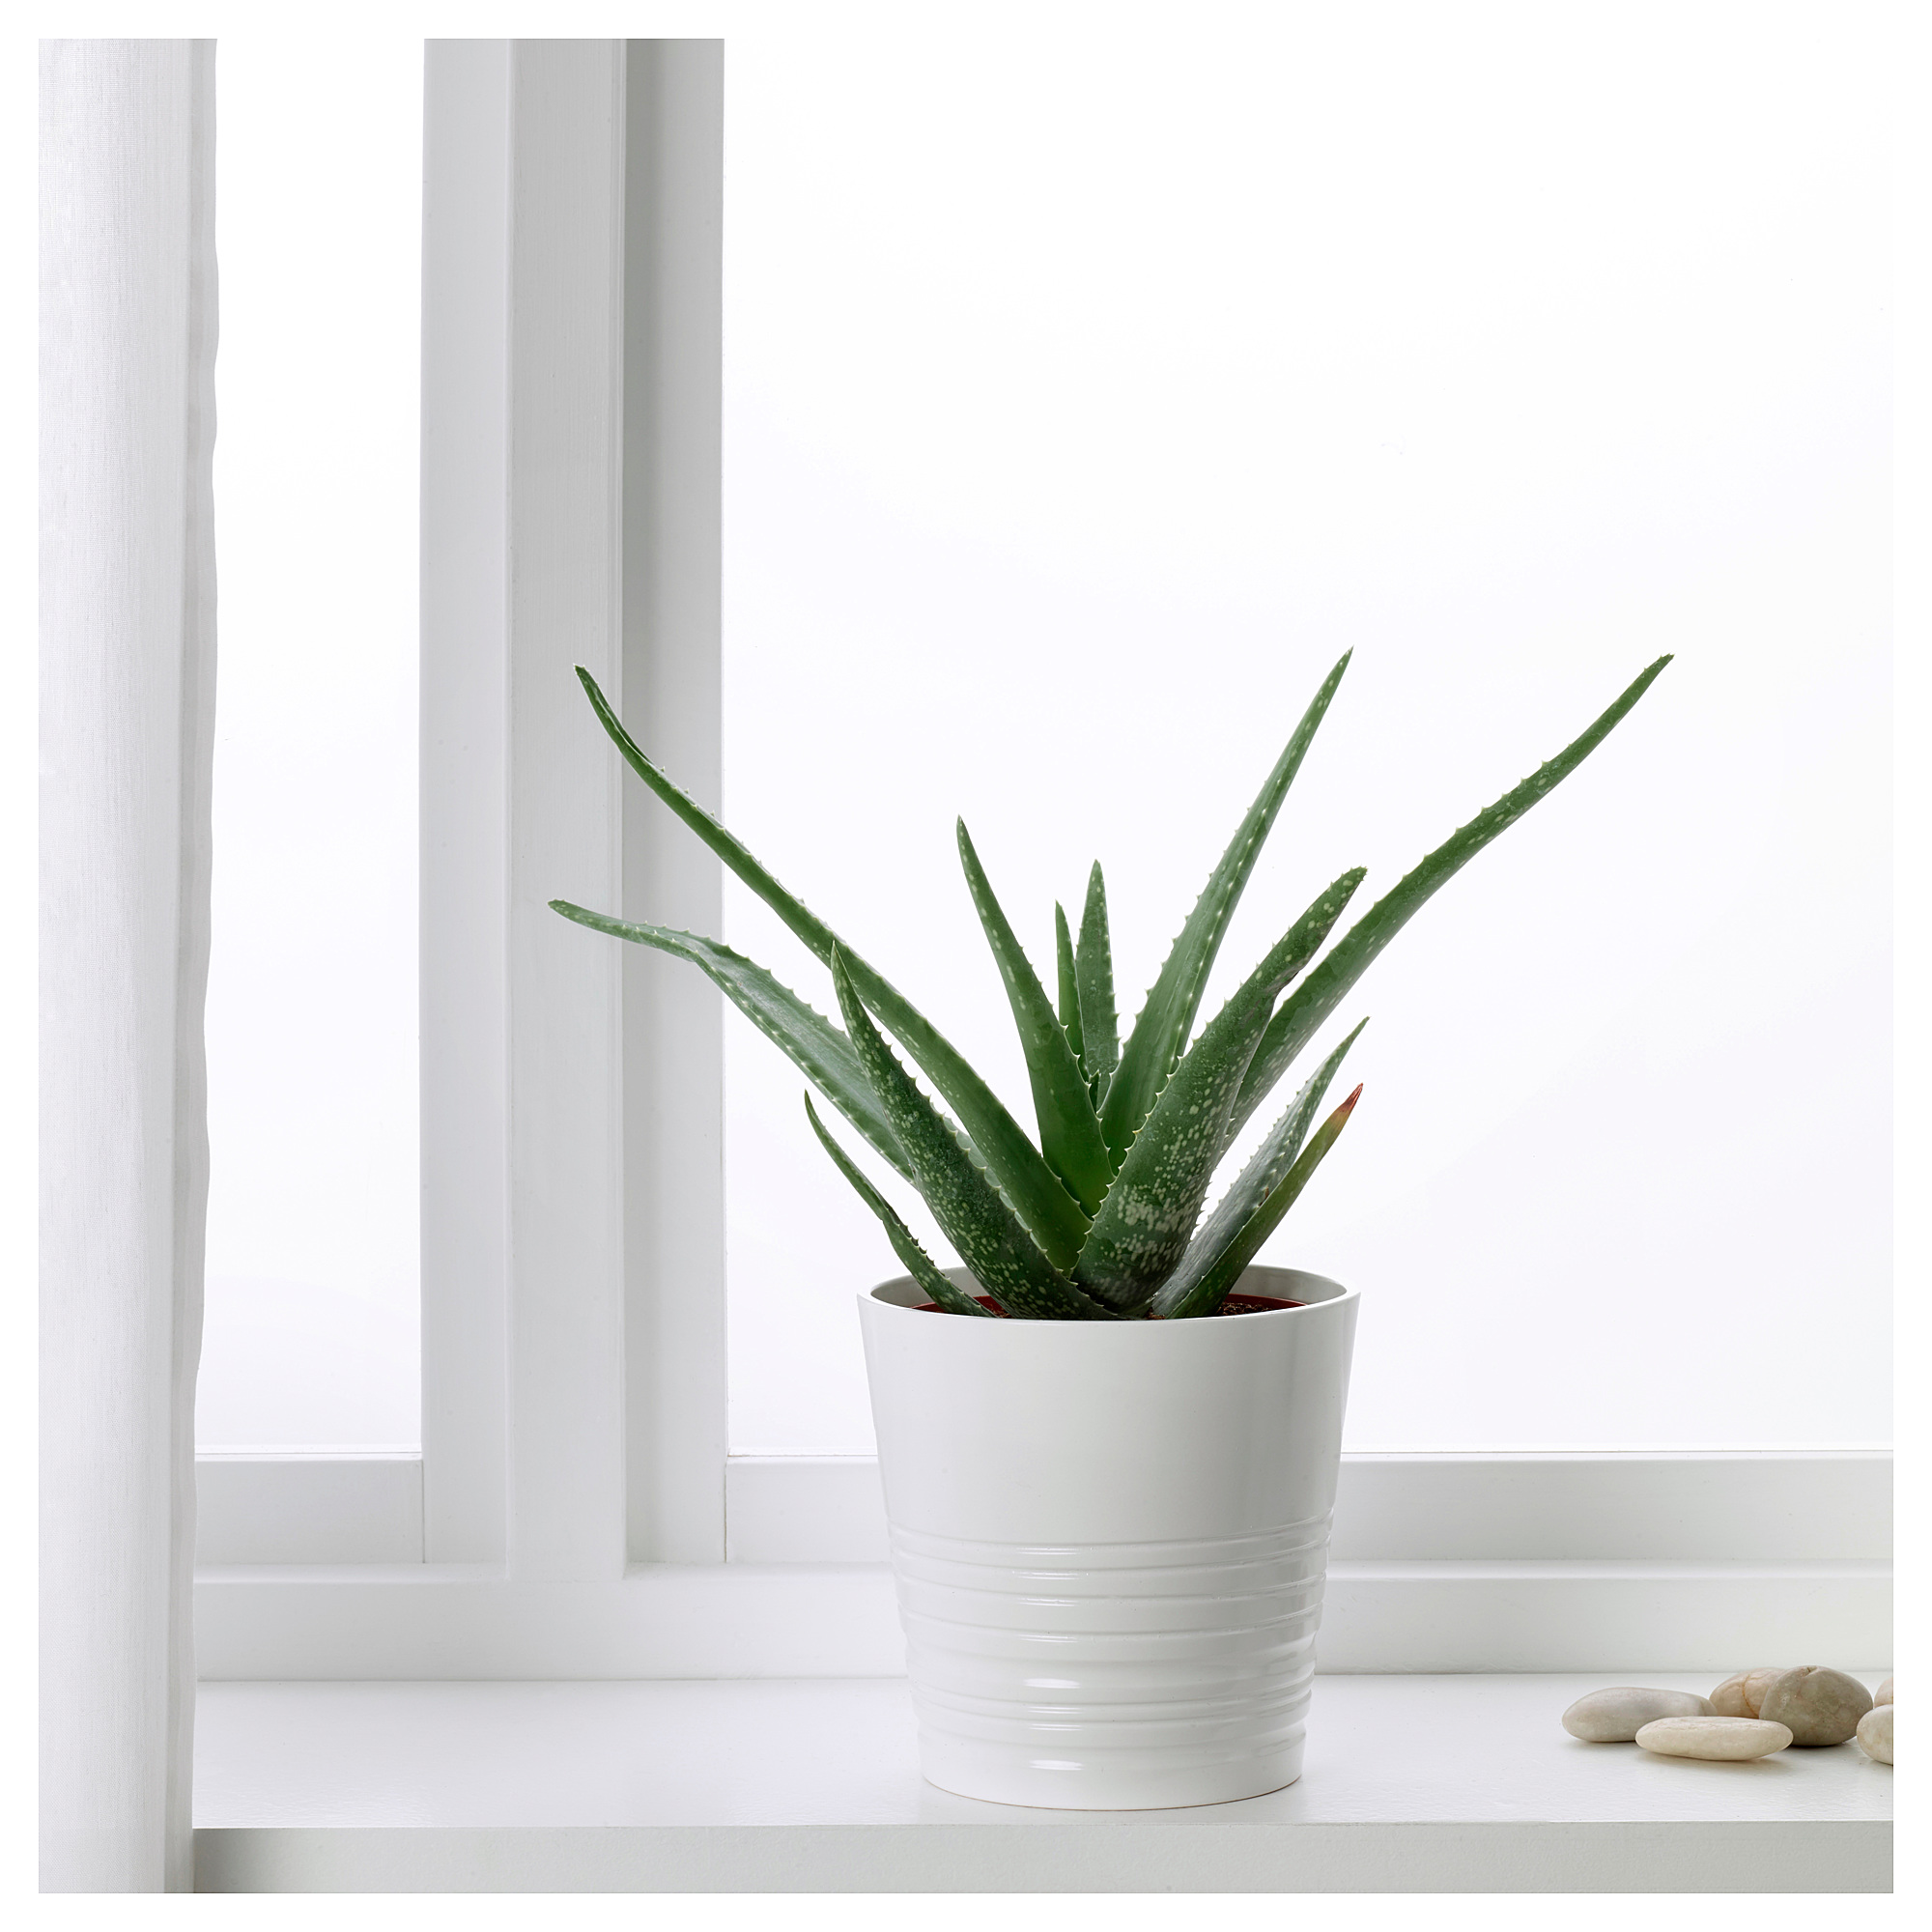 Aloe vera: lumalaking halaman sa bahay